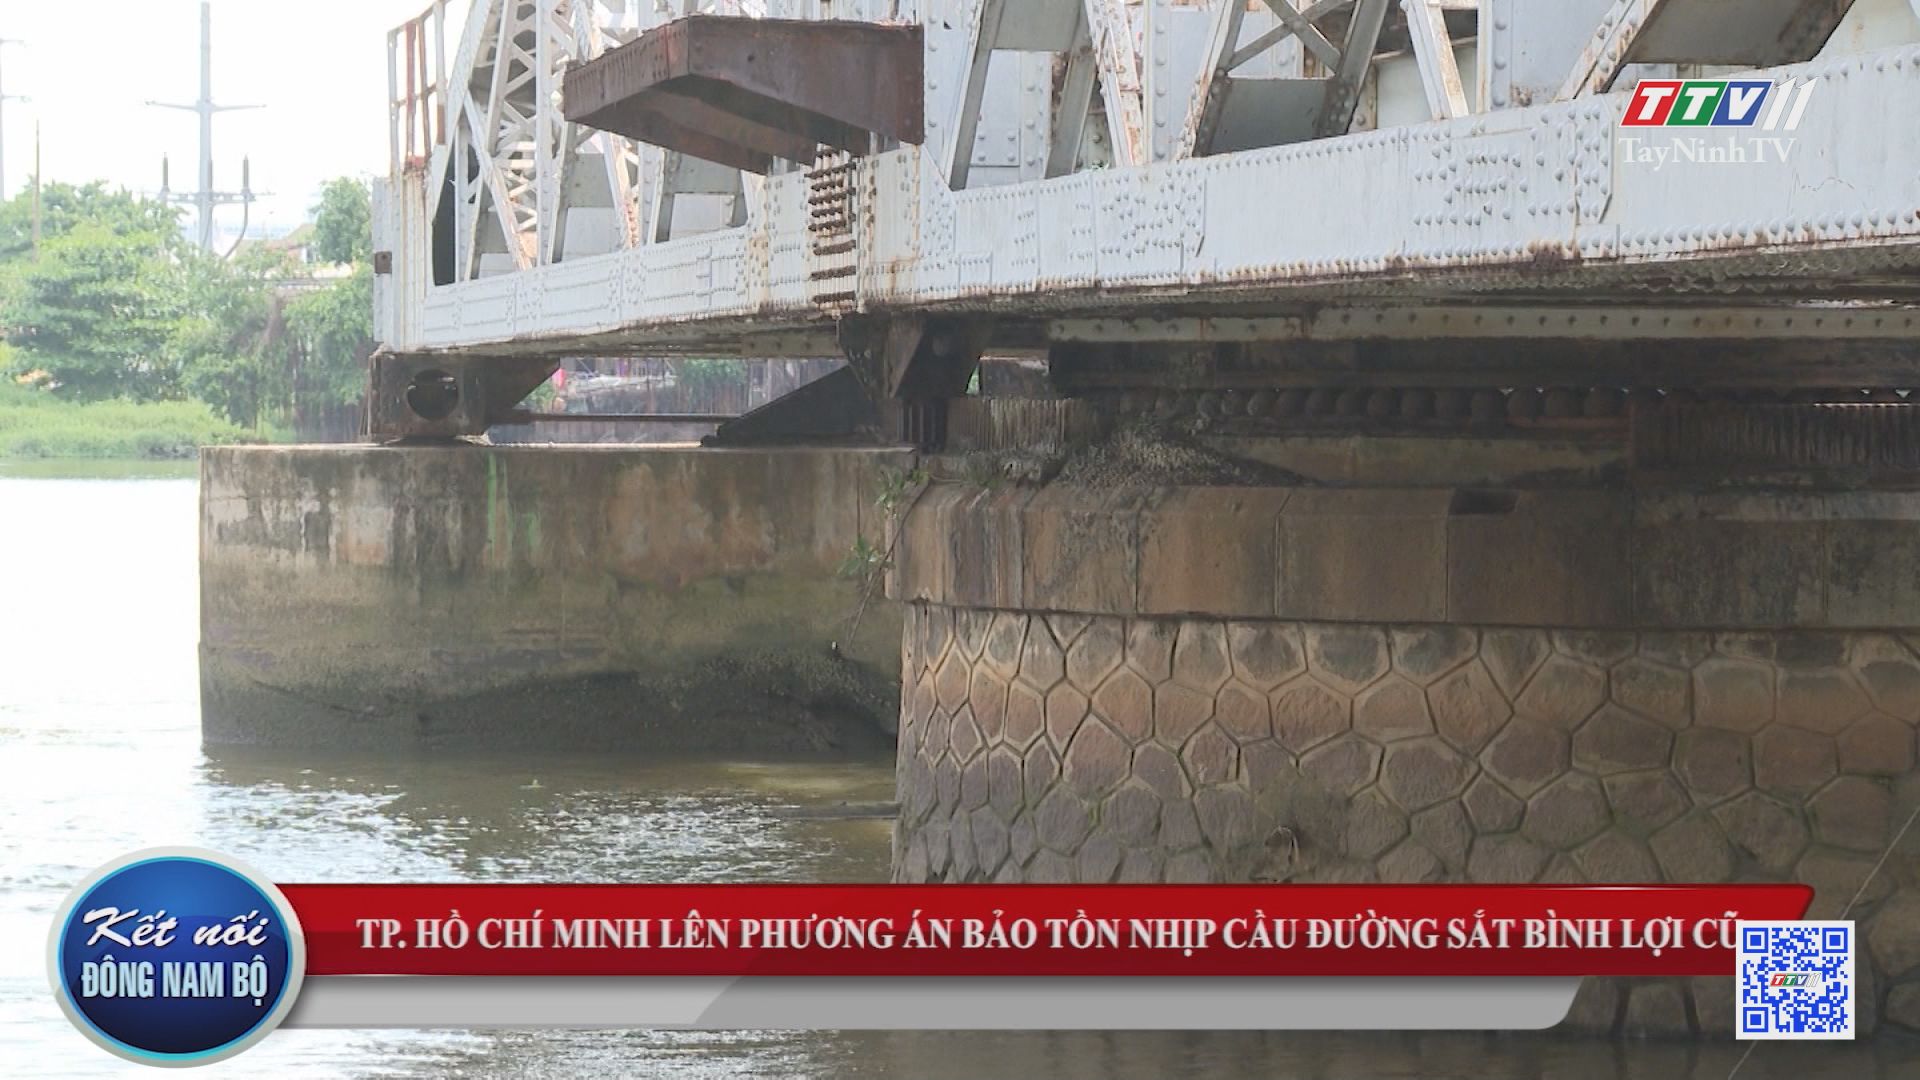 TP.Hồ Chí Minh lên phương án bảo tồn nhịp cầu đường sắt Bình Lợi cũ | KẾT NỐI ĐÔNG NAM BỘ | TayNinhTV